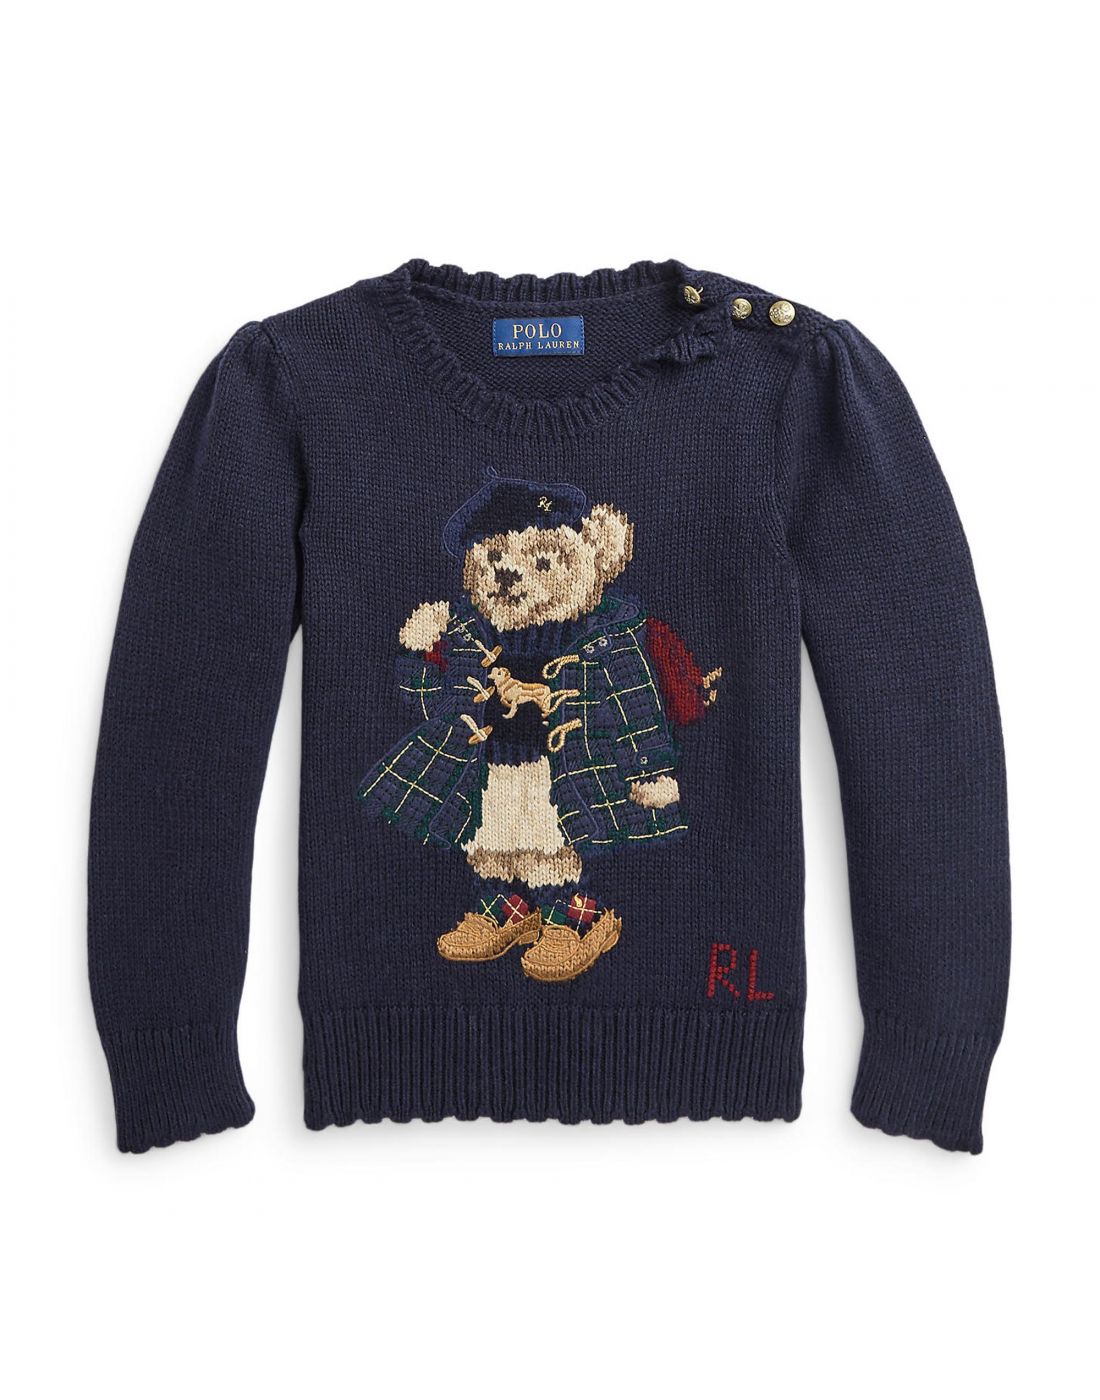 Παιδική Μπλούζα Πλεκτή Polo Ralph Lauren, Polo Ralph Lauren, 23265106 |  LapinKids.com | LAPIN KIDS